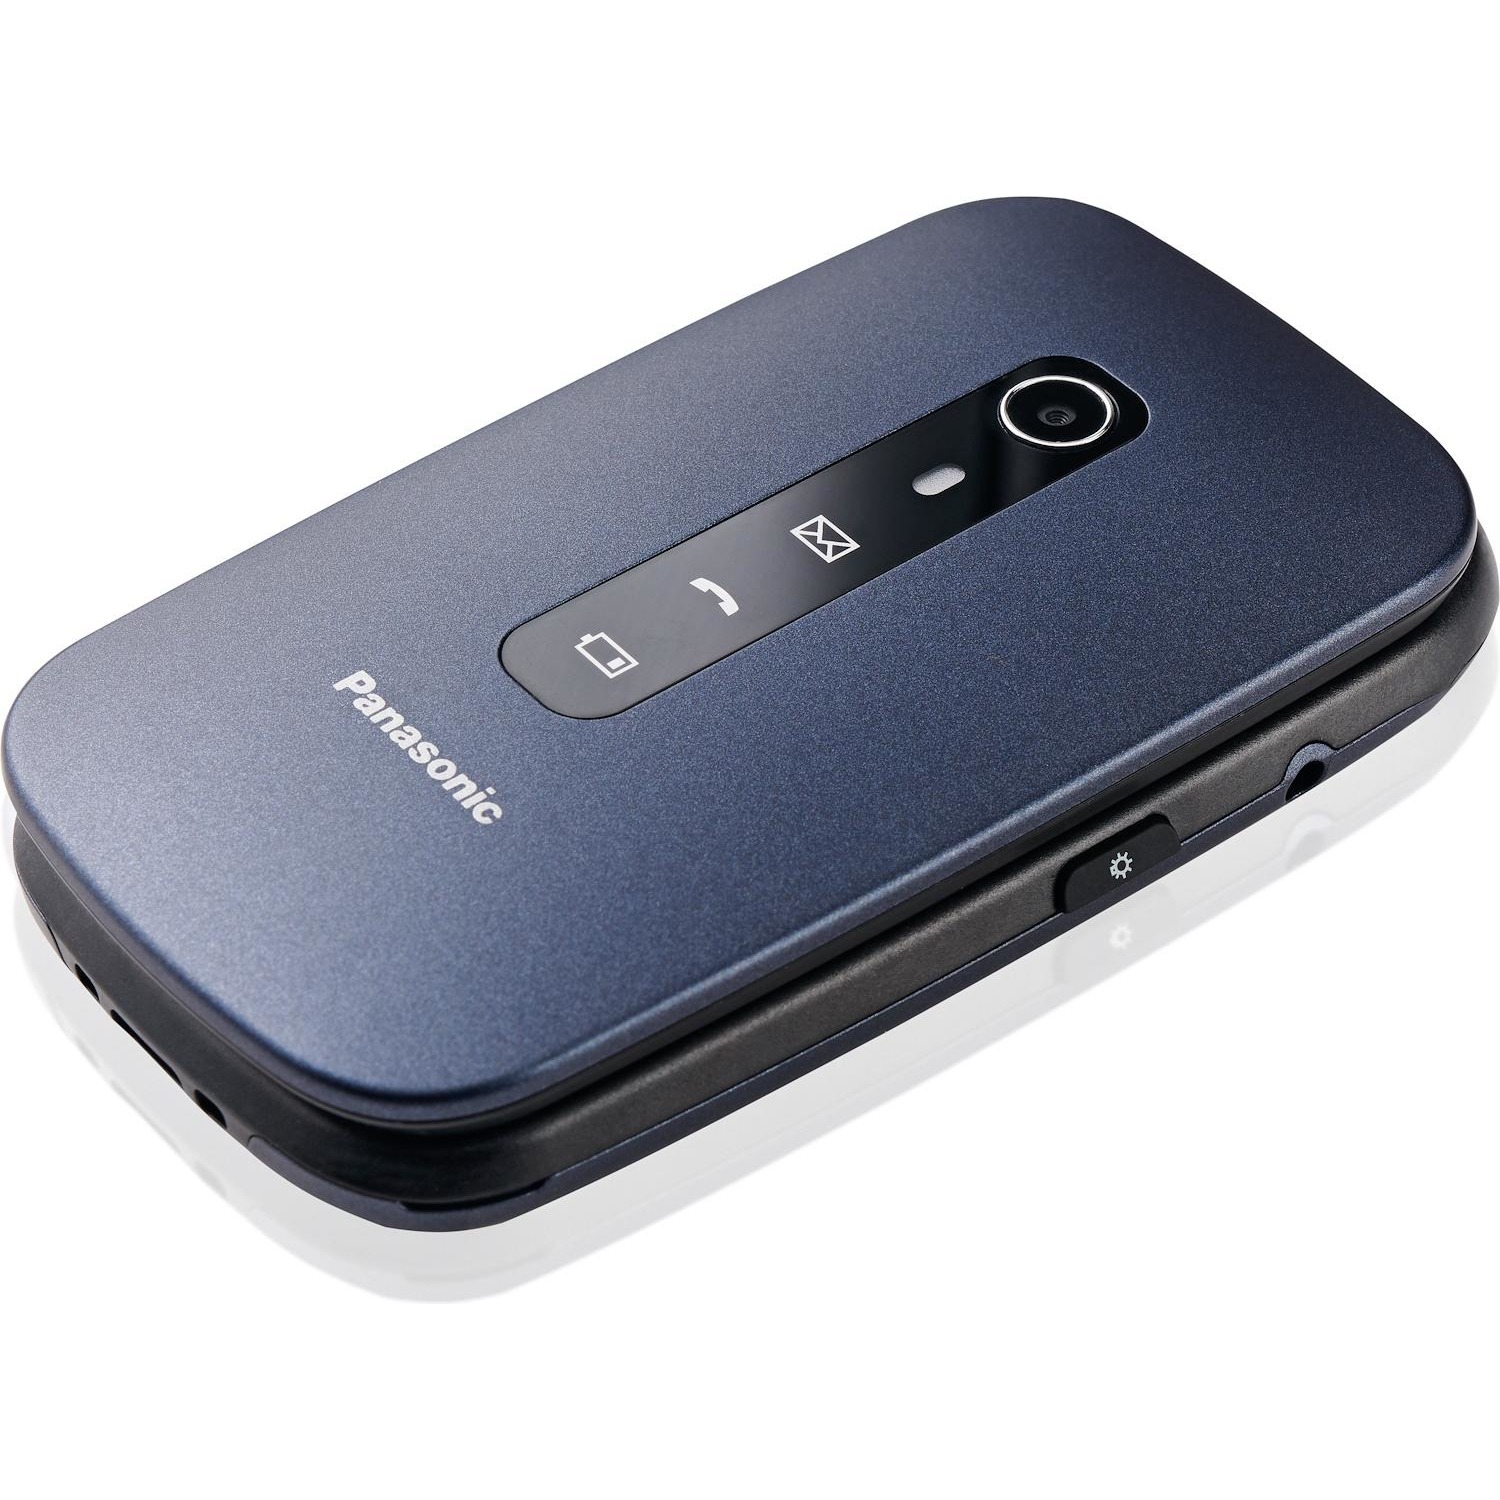 Immagine per Cellulare Panasonic TU550 blu da DIMOStore